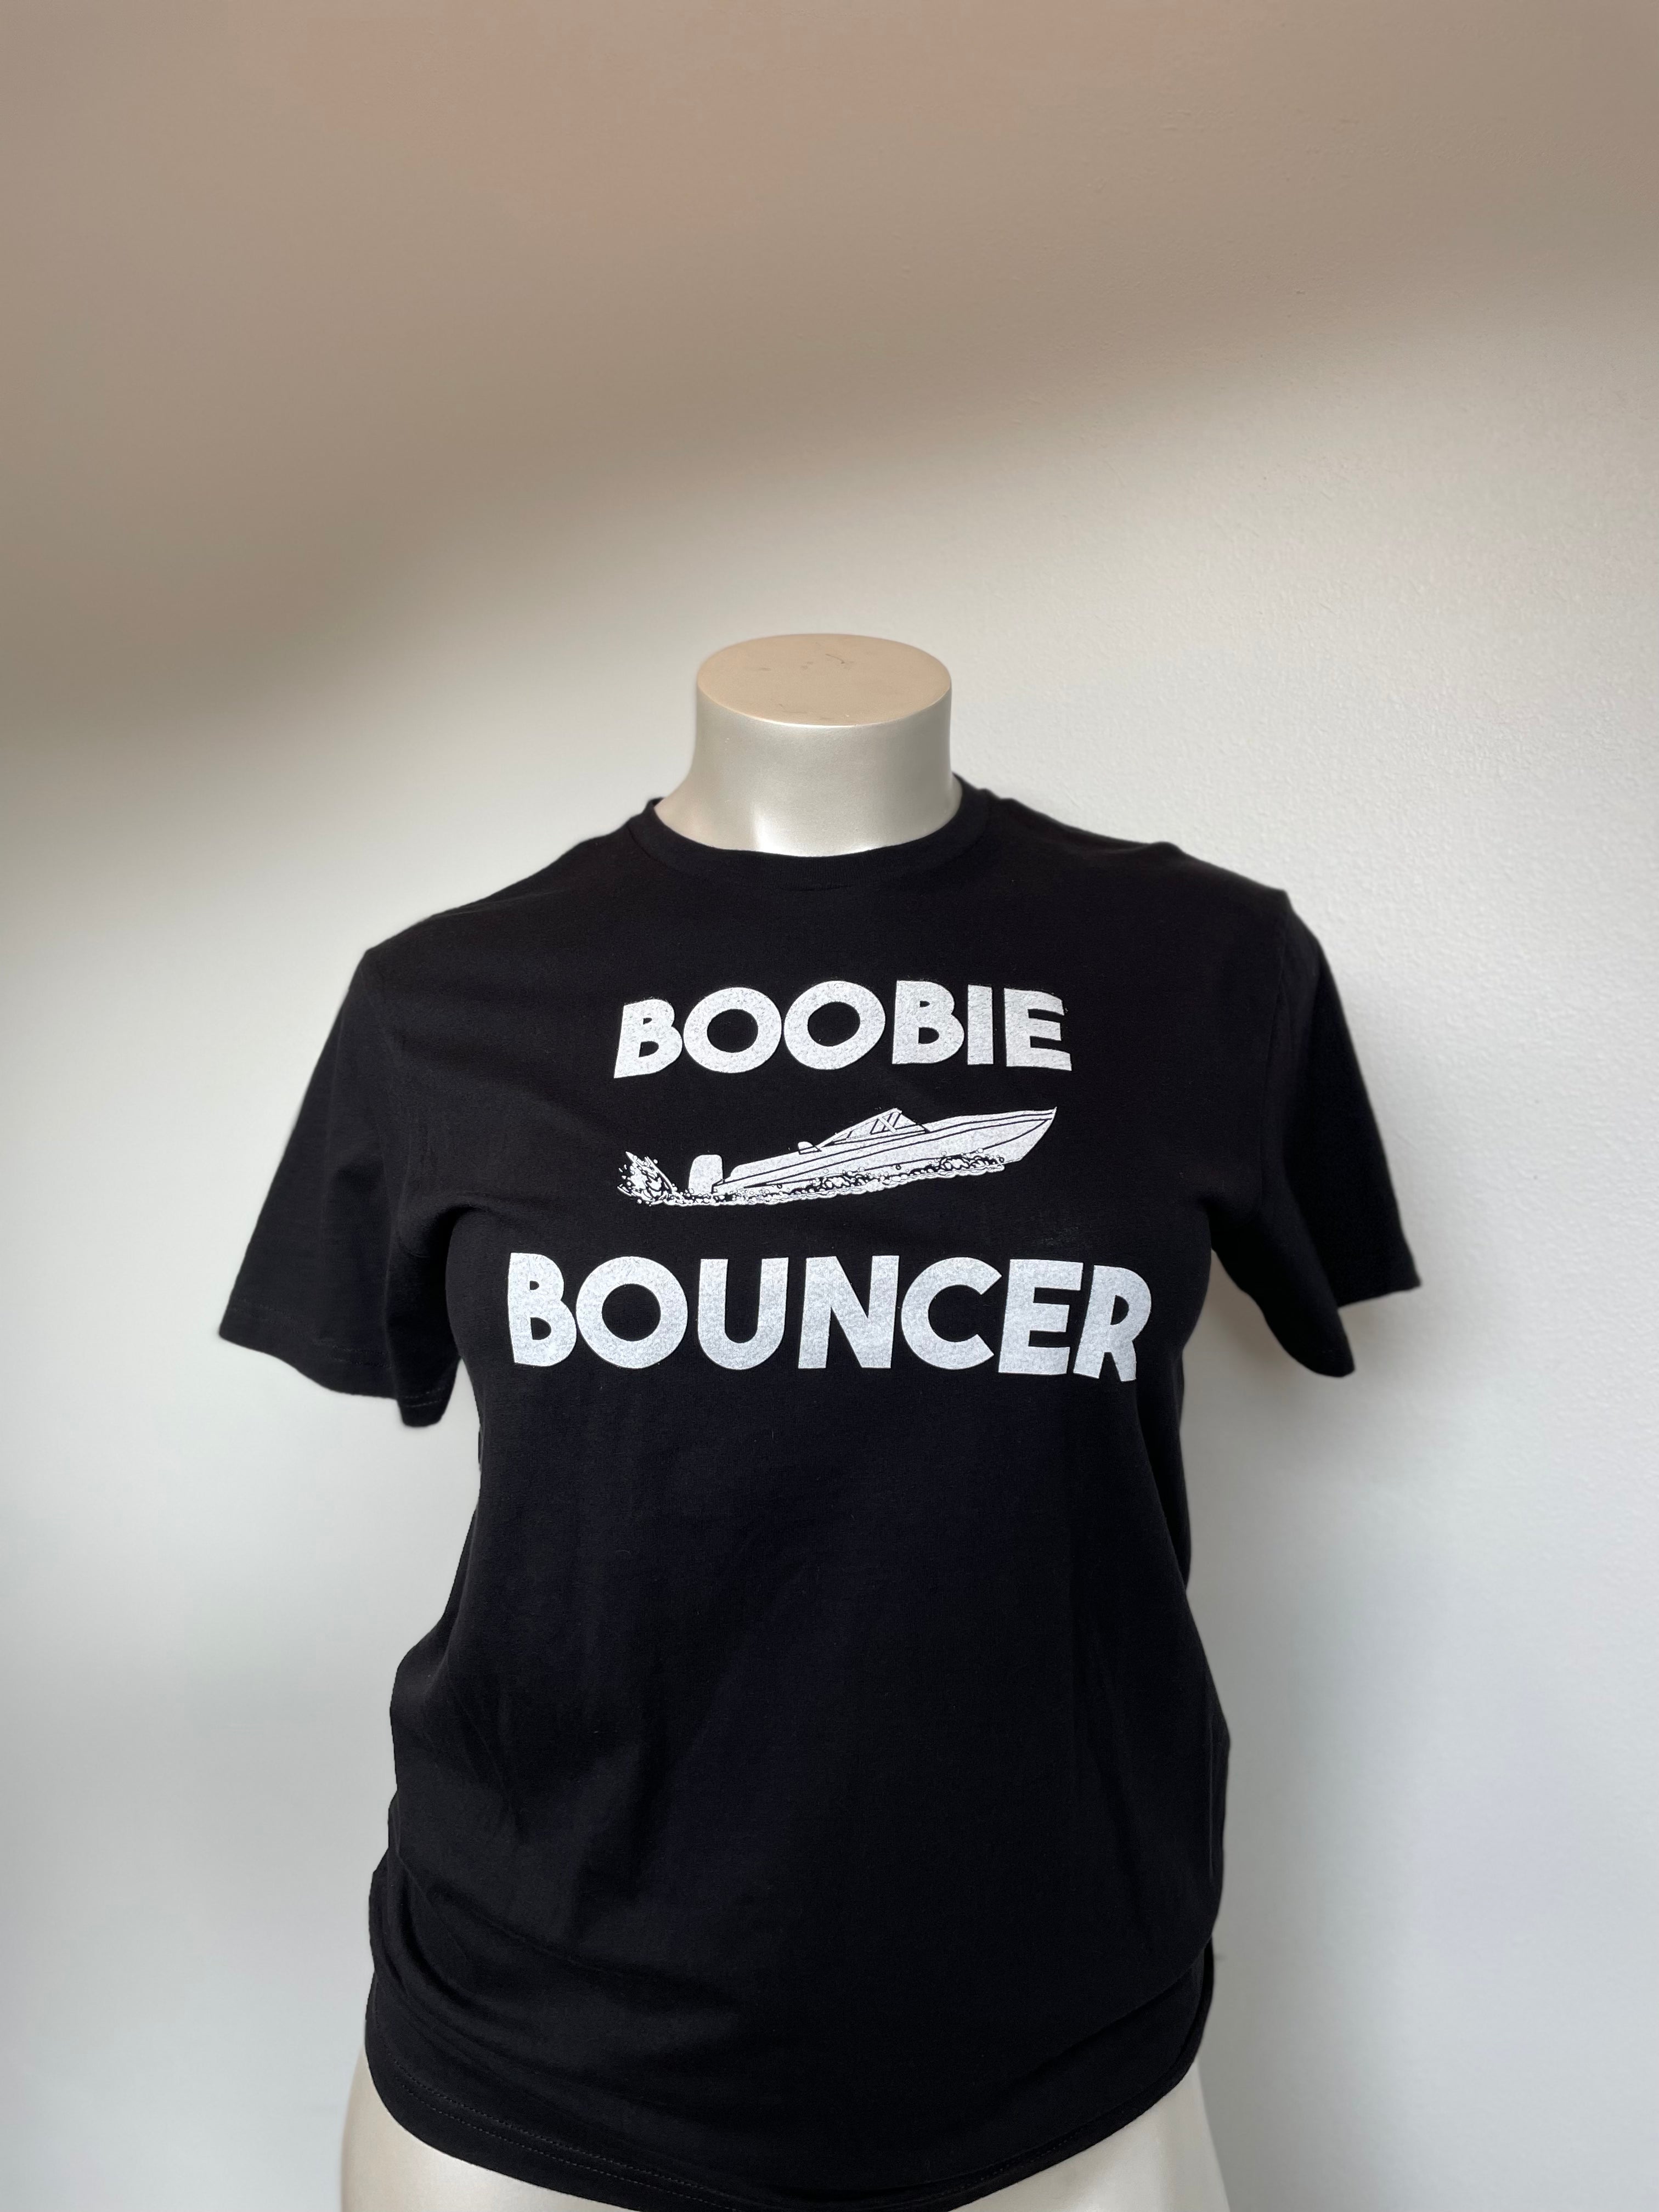 Boobie Bouncer